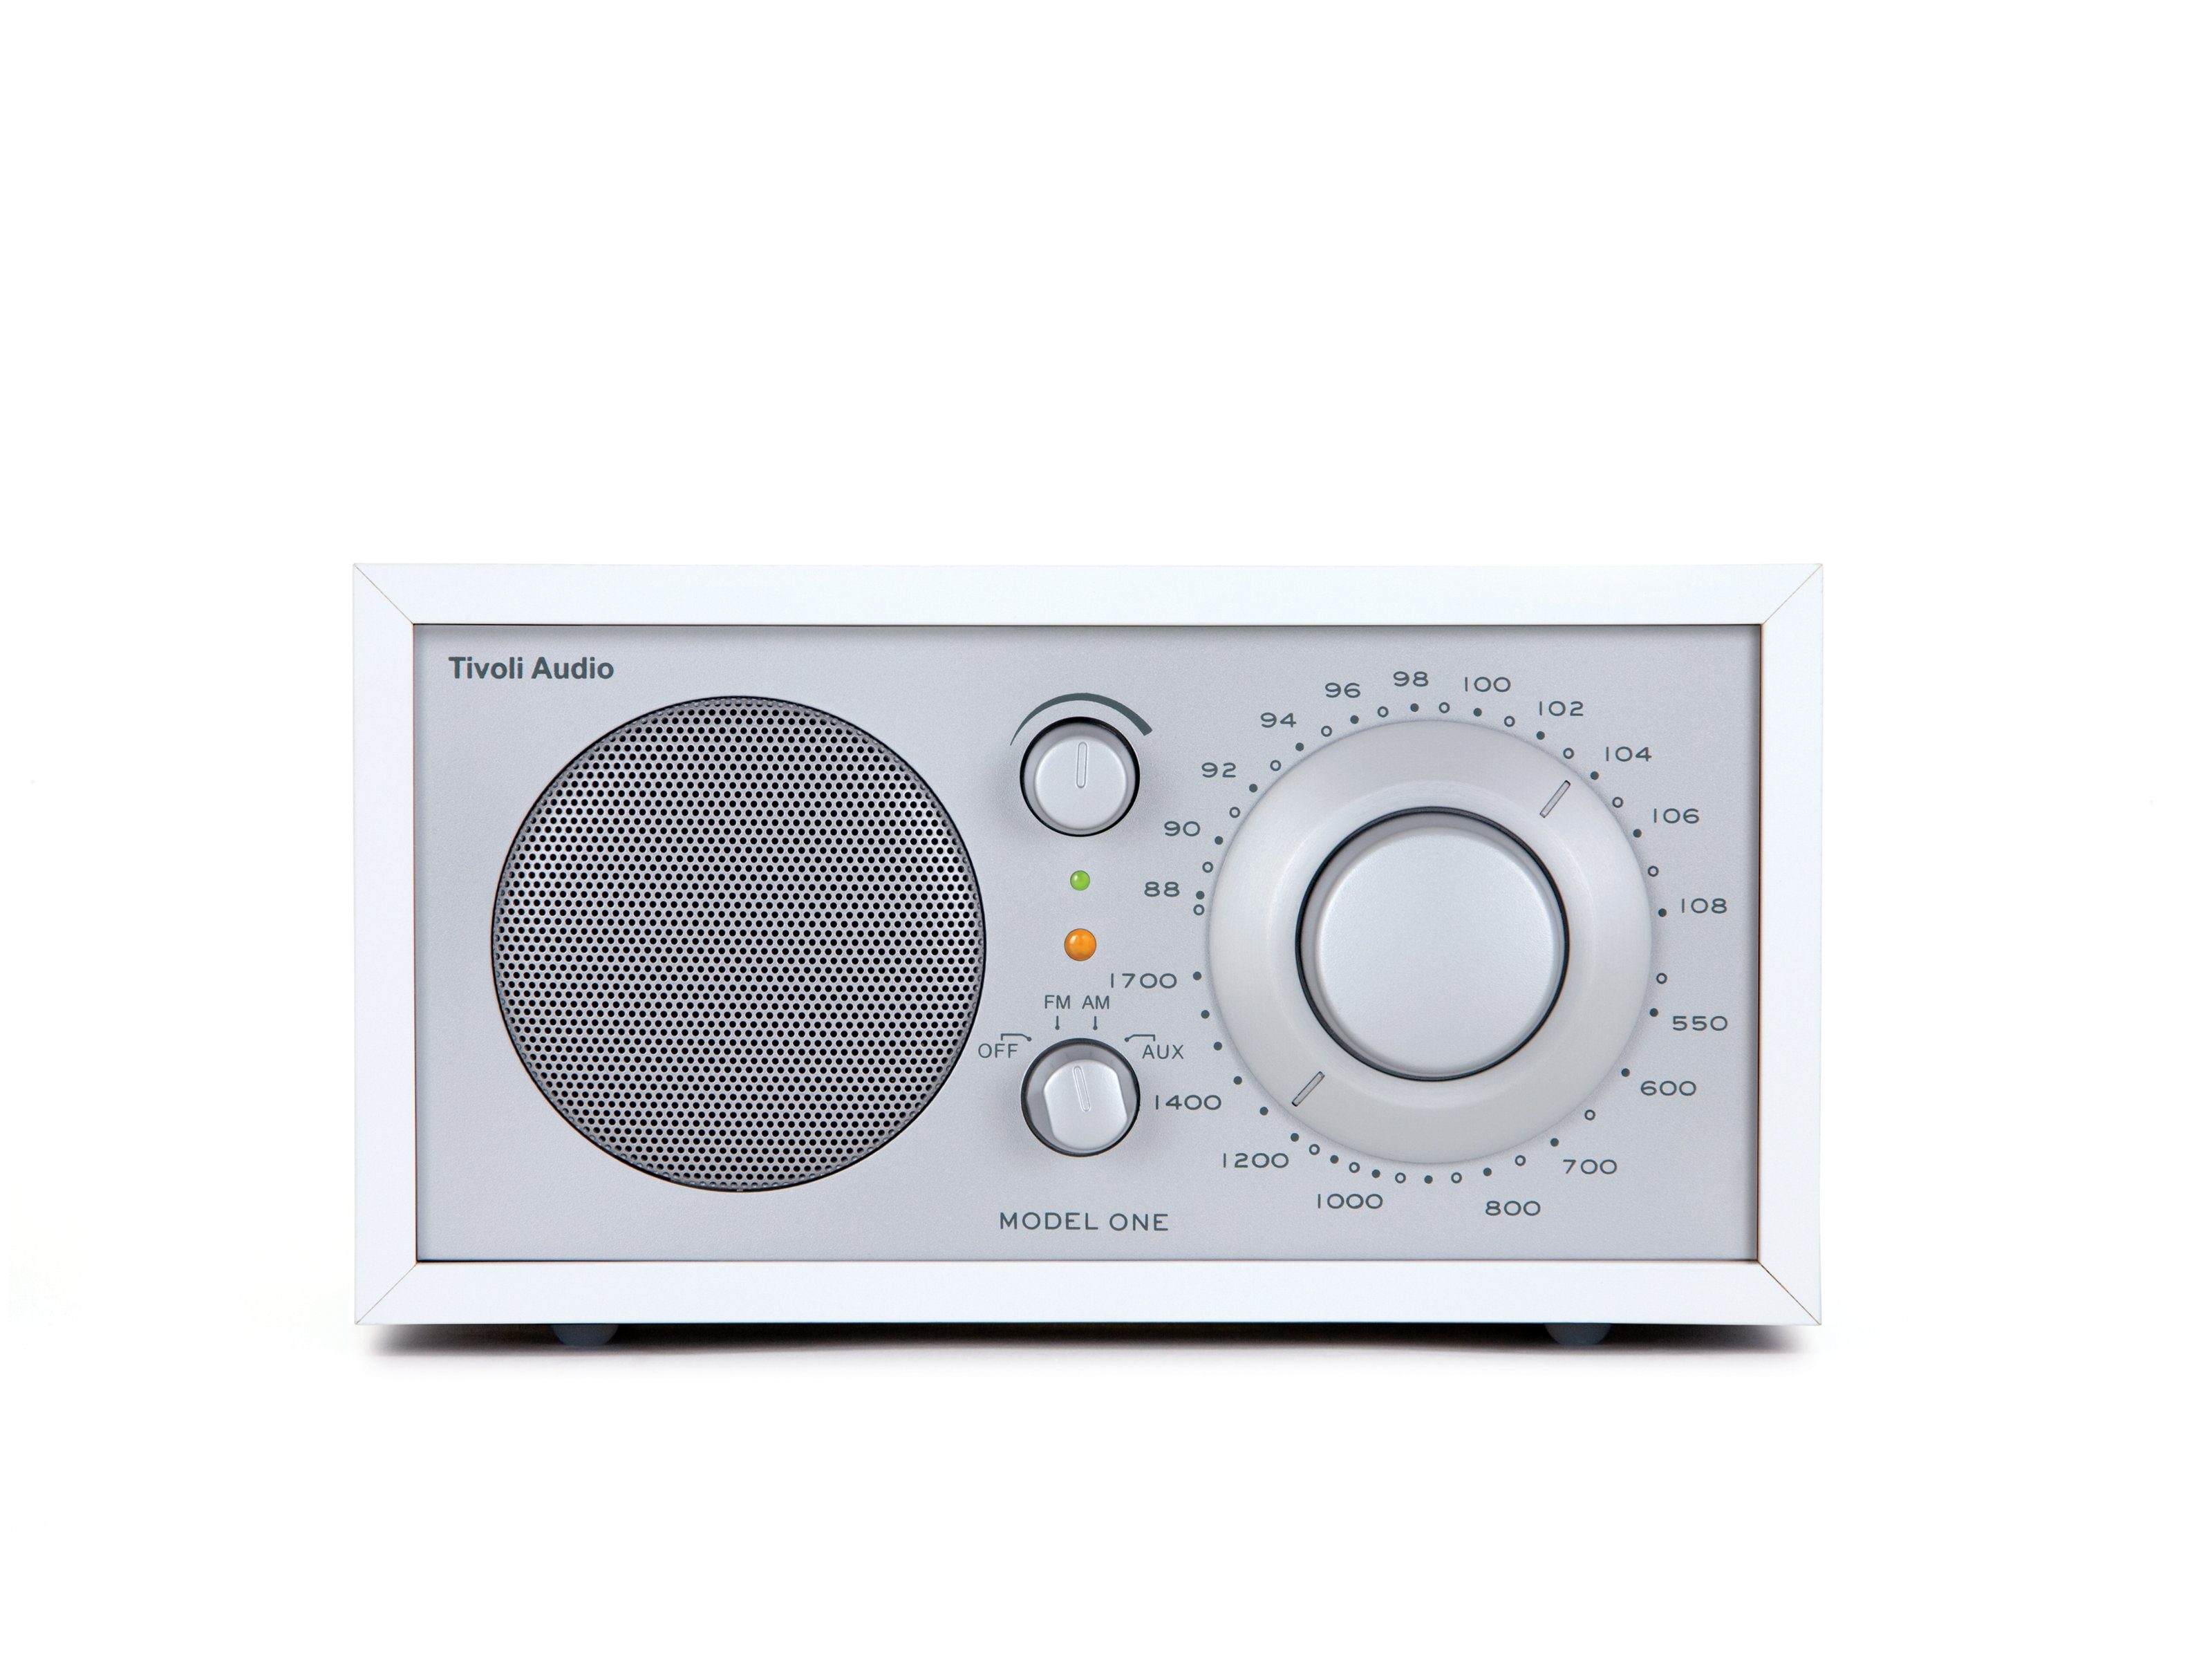 One Küchen-Radio, Tivoli Küchen-Radio Weiss/Silber (FM-Tuner, Retro-Optik, Audio Echtholz-Gehäuse) Model